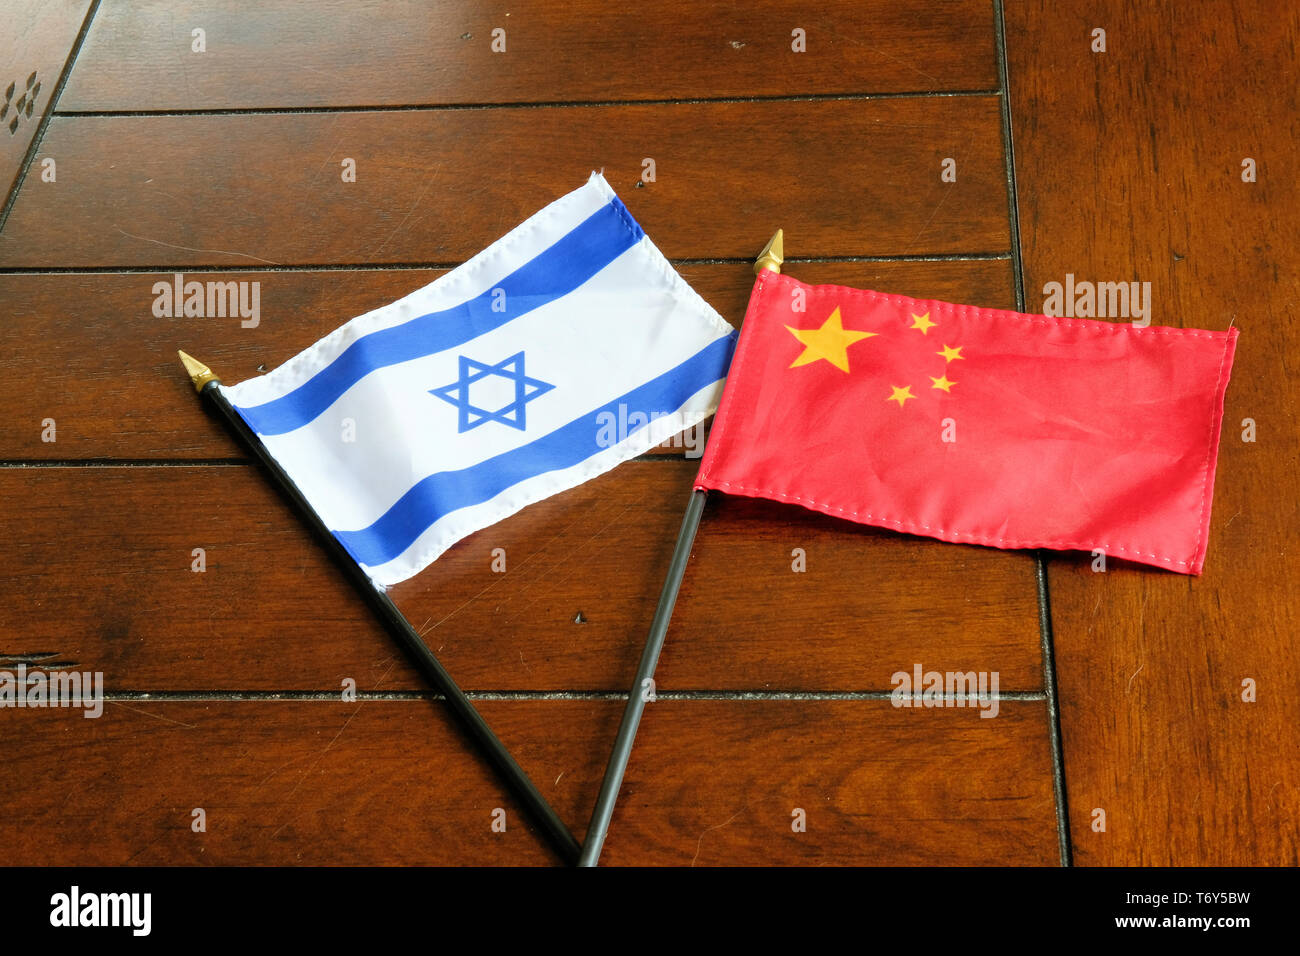 Flagge von China und Israel auf einer hölzernen Oberfläche; Israeli-Chinese Beziehungen. Stockfoto